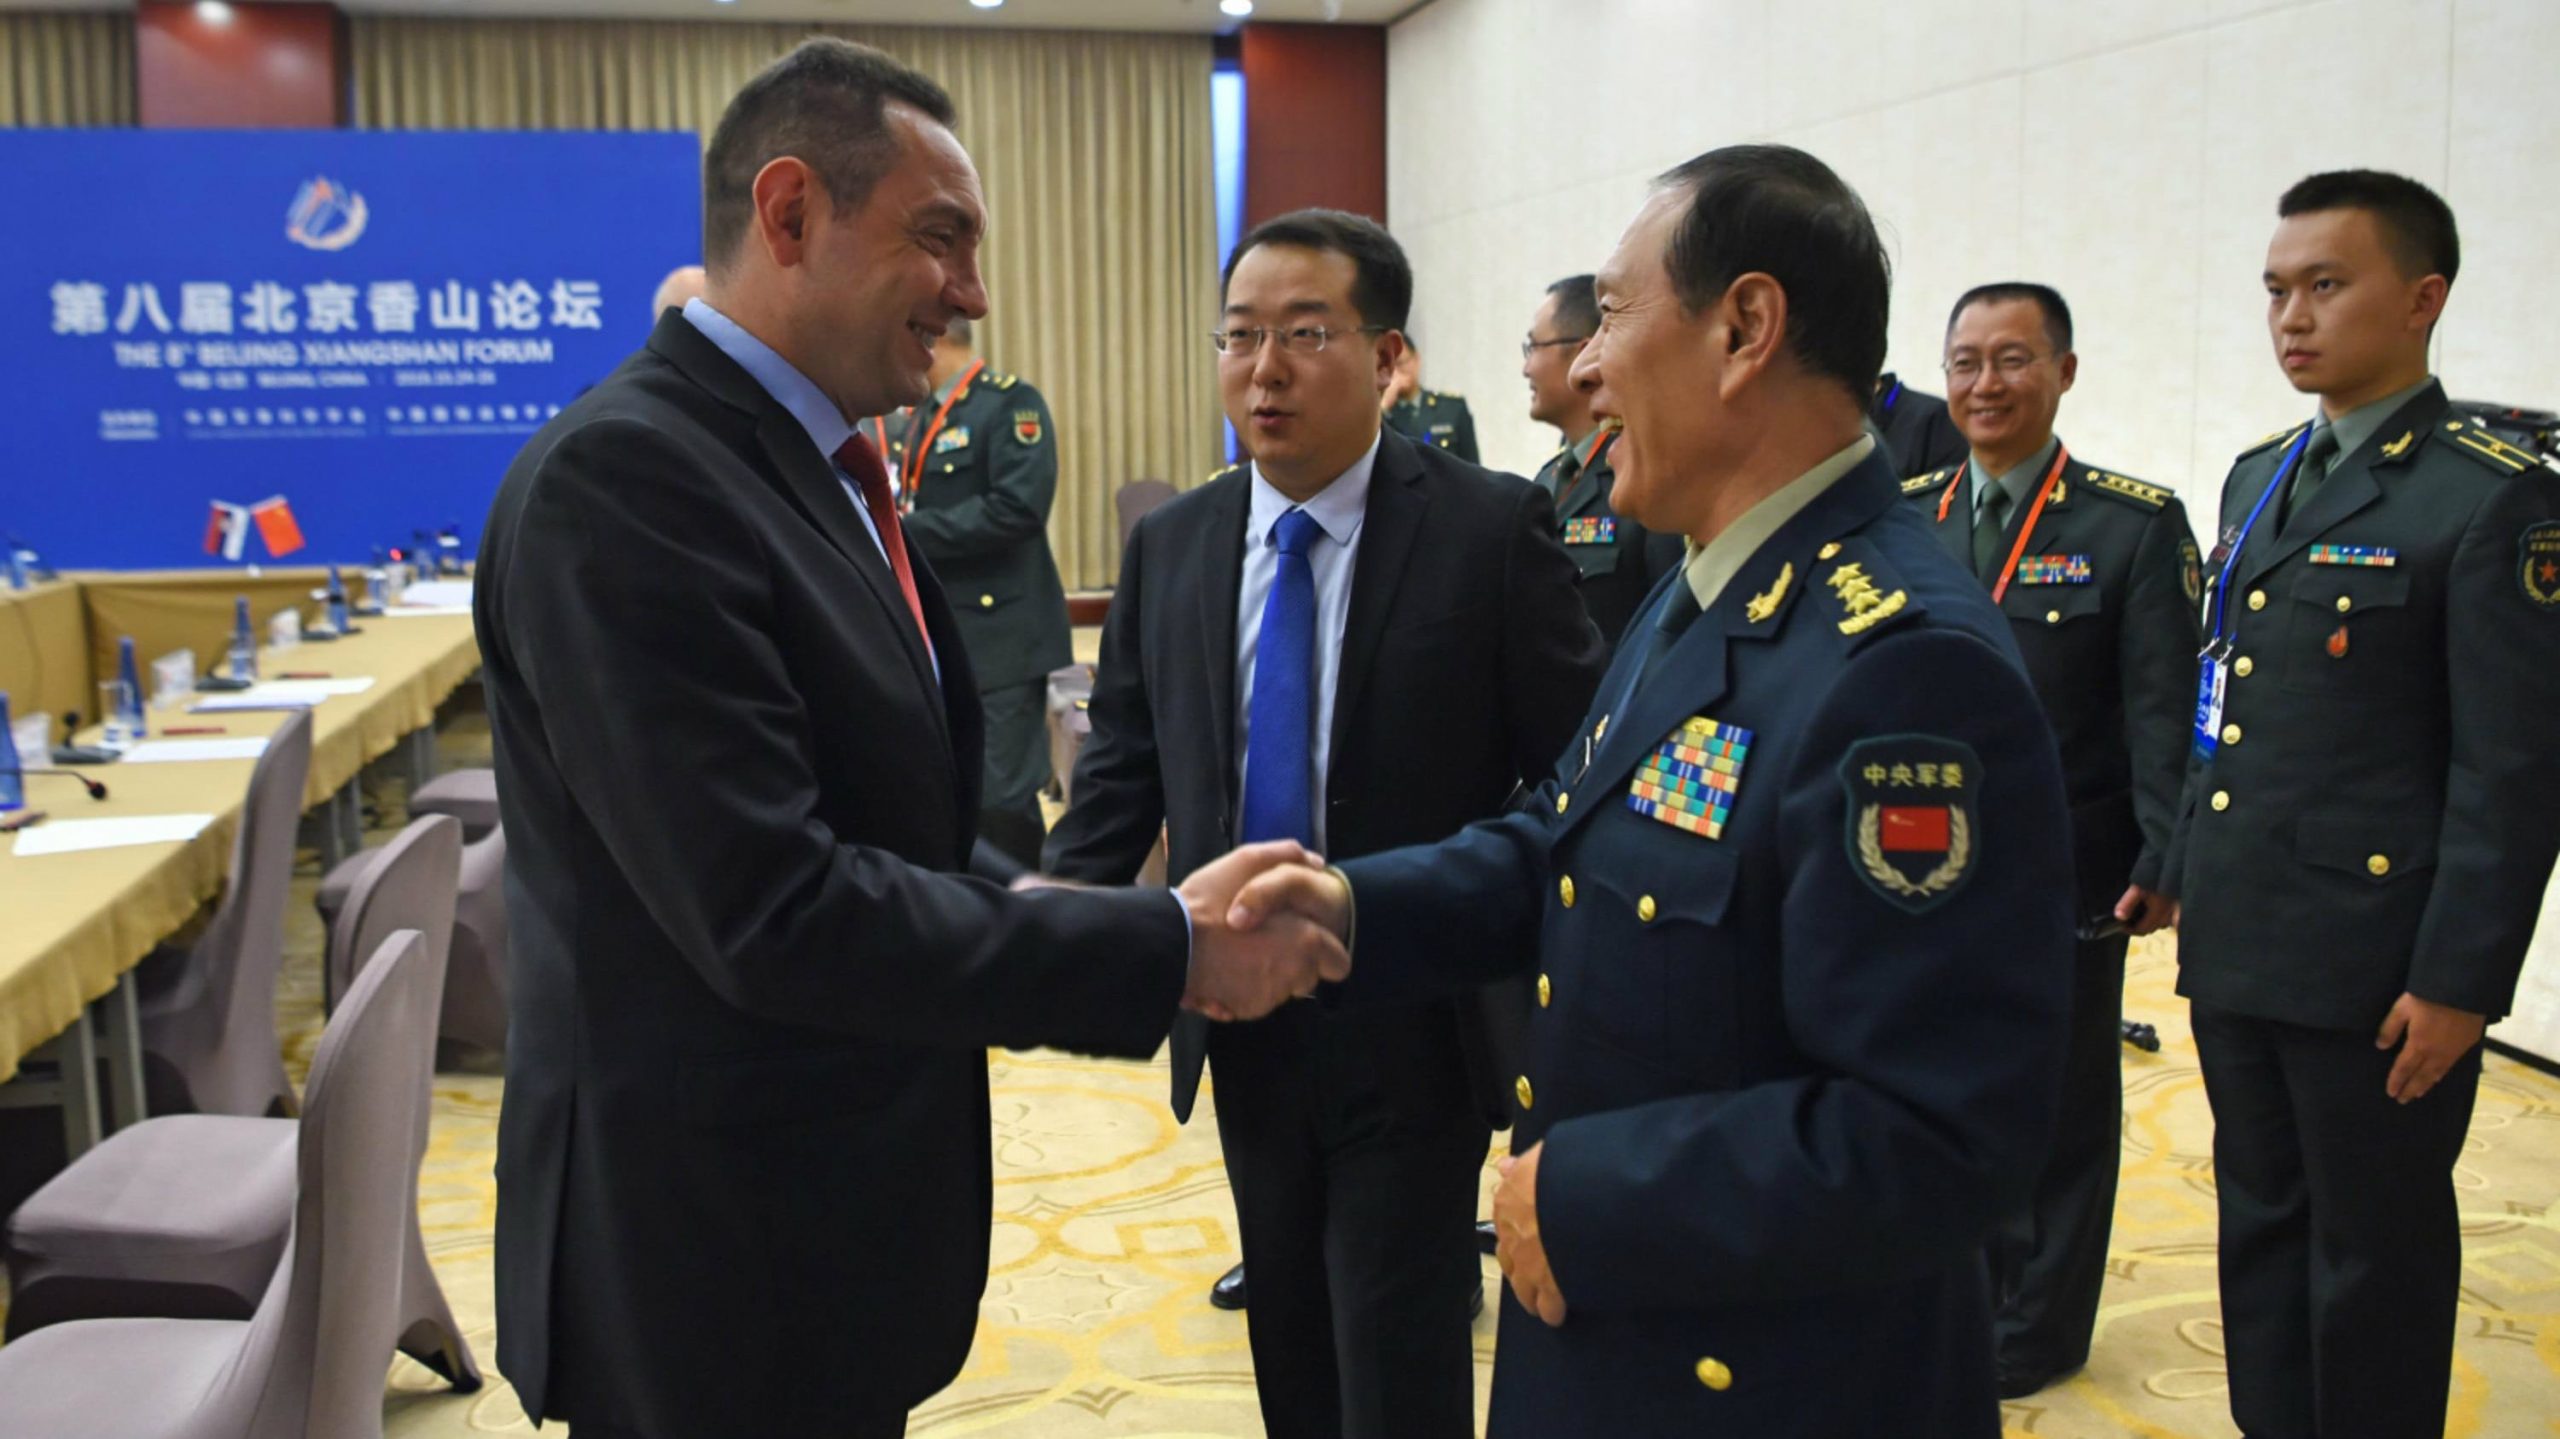 Fenghe: Kina pridaje značaj saradnji s prijateljima poput Srbije 1